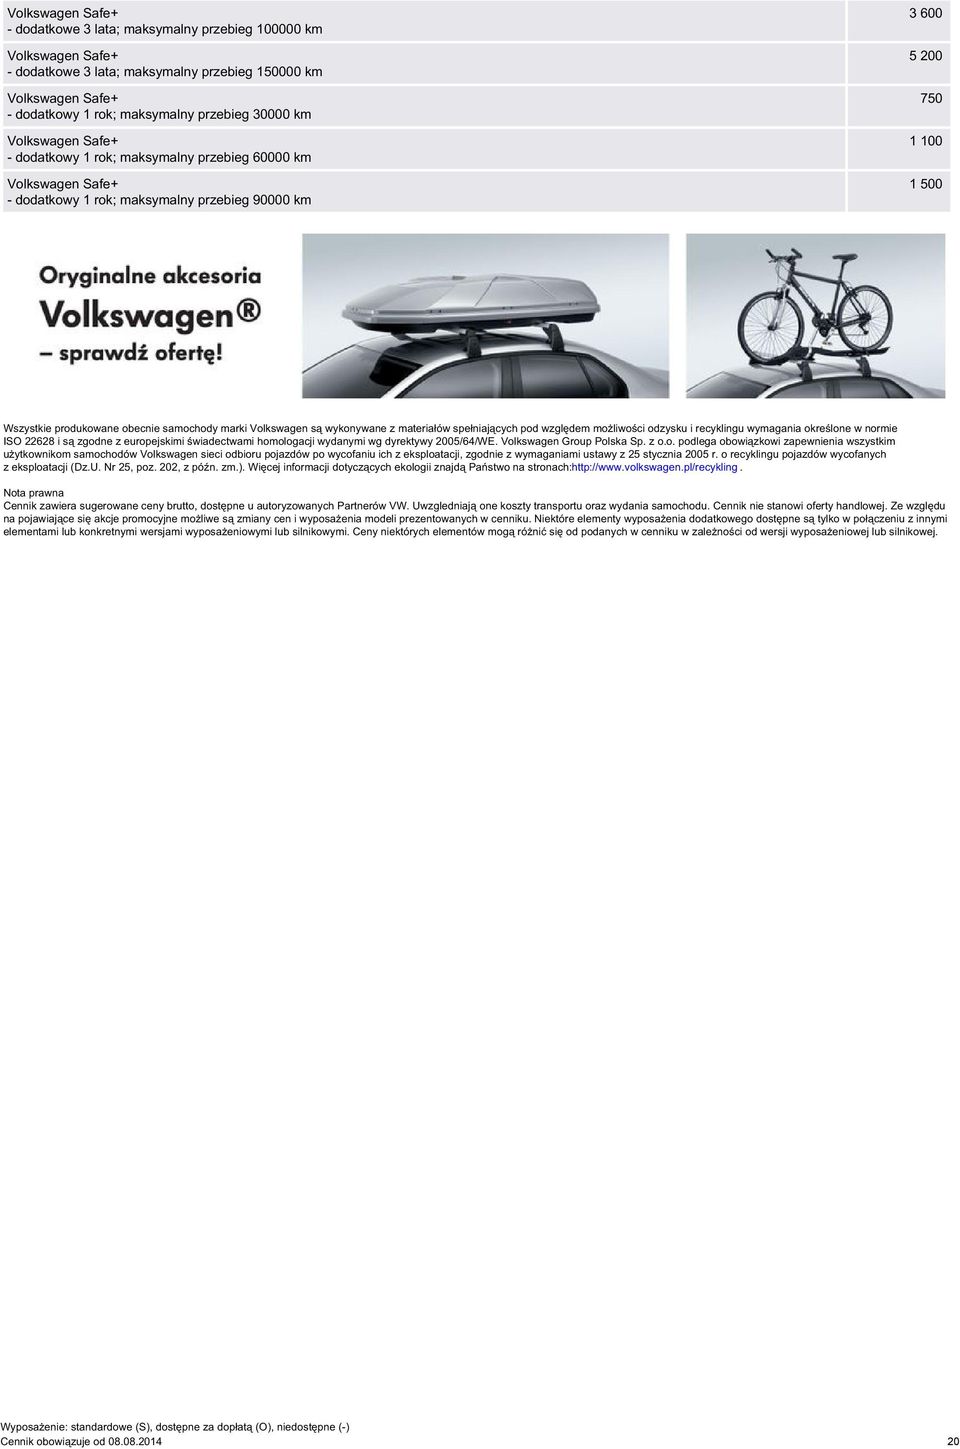 odzysku i recyklingu wymagania określone w normie ISO 22628 i są zgodne z europejskimi świadectwami homologacji wydanymi wg dyrektywy 2005/64/WE. Volkswagen Group Polska Sp. z o.o. podlega obowiązkowi zapewnienia wszystkim użytkownikom samochodów Volkswagen sieci odbioru pojazdów po wycofaniu ich z eksploatacji, zgodnie z wymaganiami ustawy z 25 stycznia 2005 r.